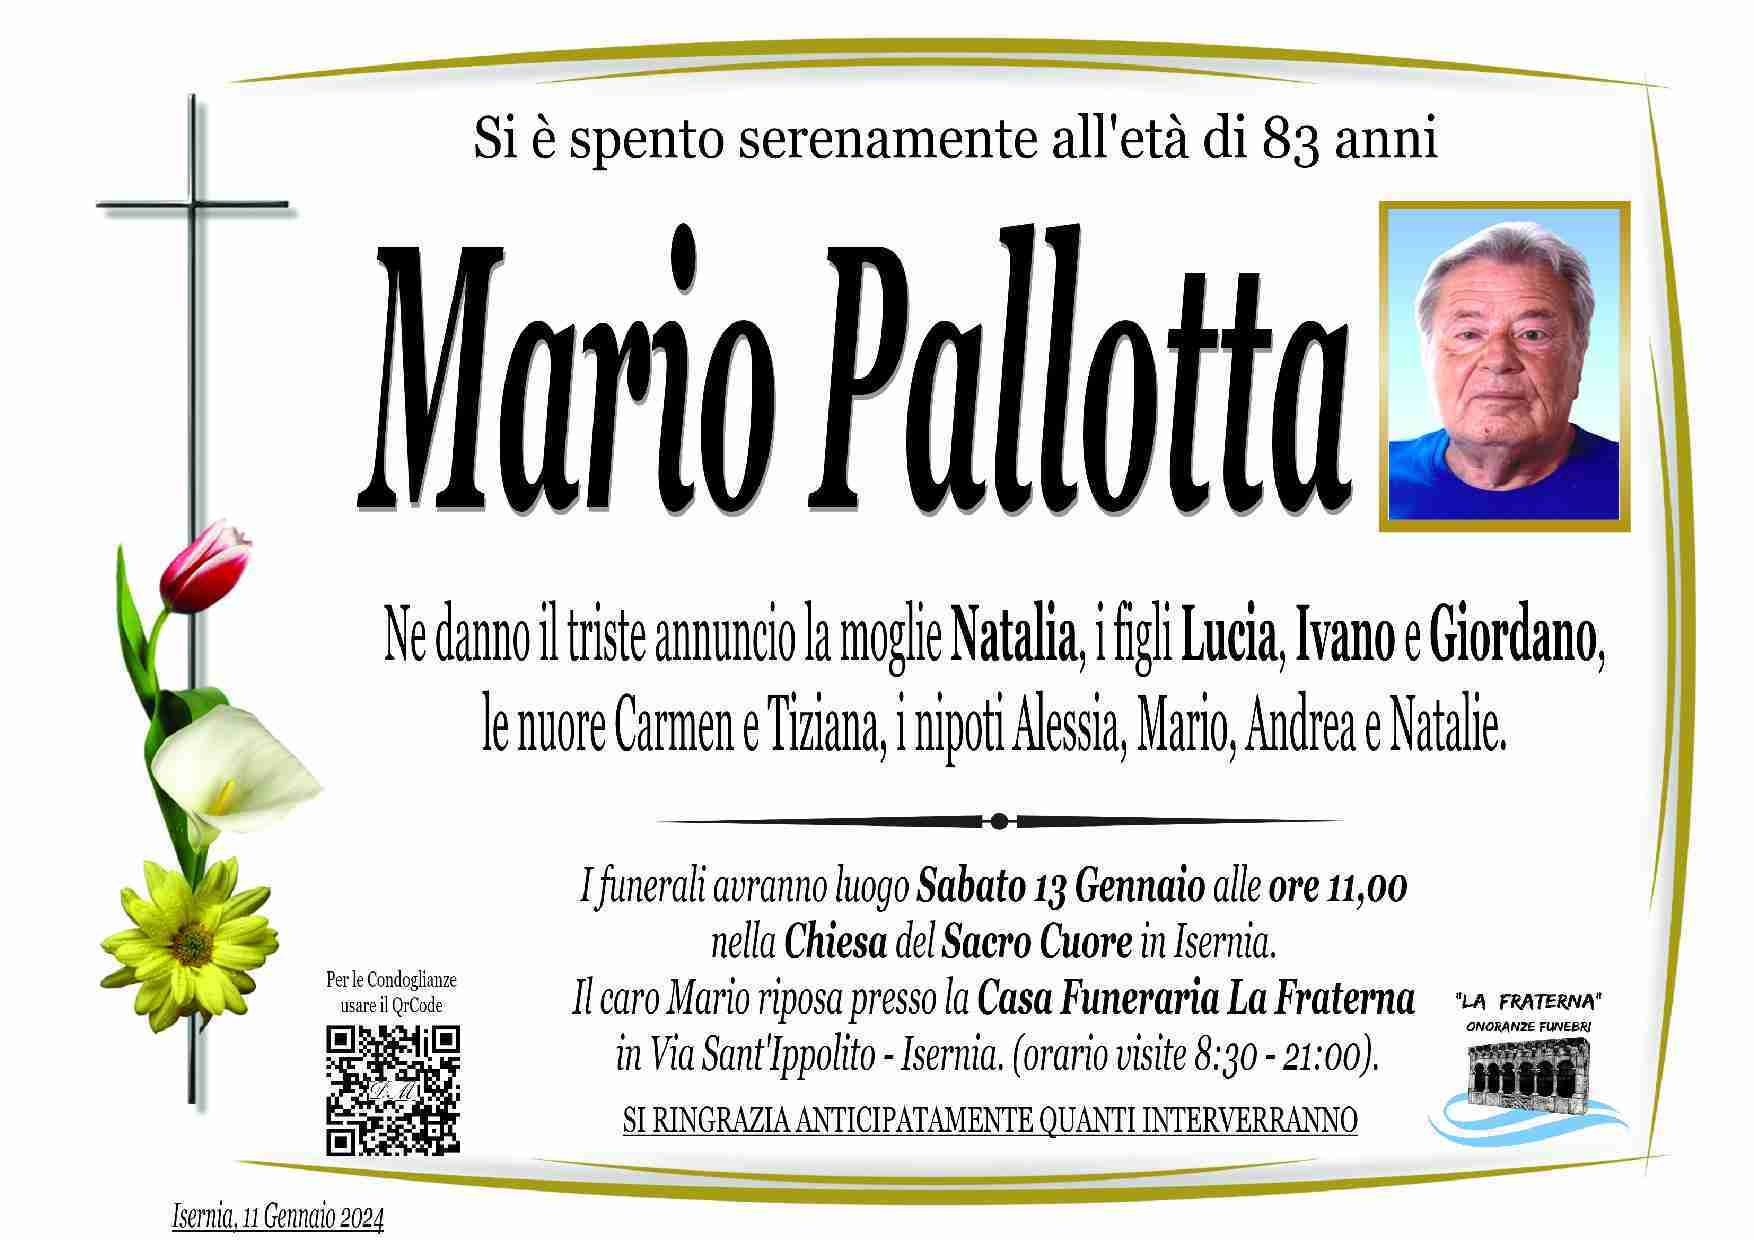 Mario Pallotta